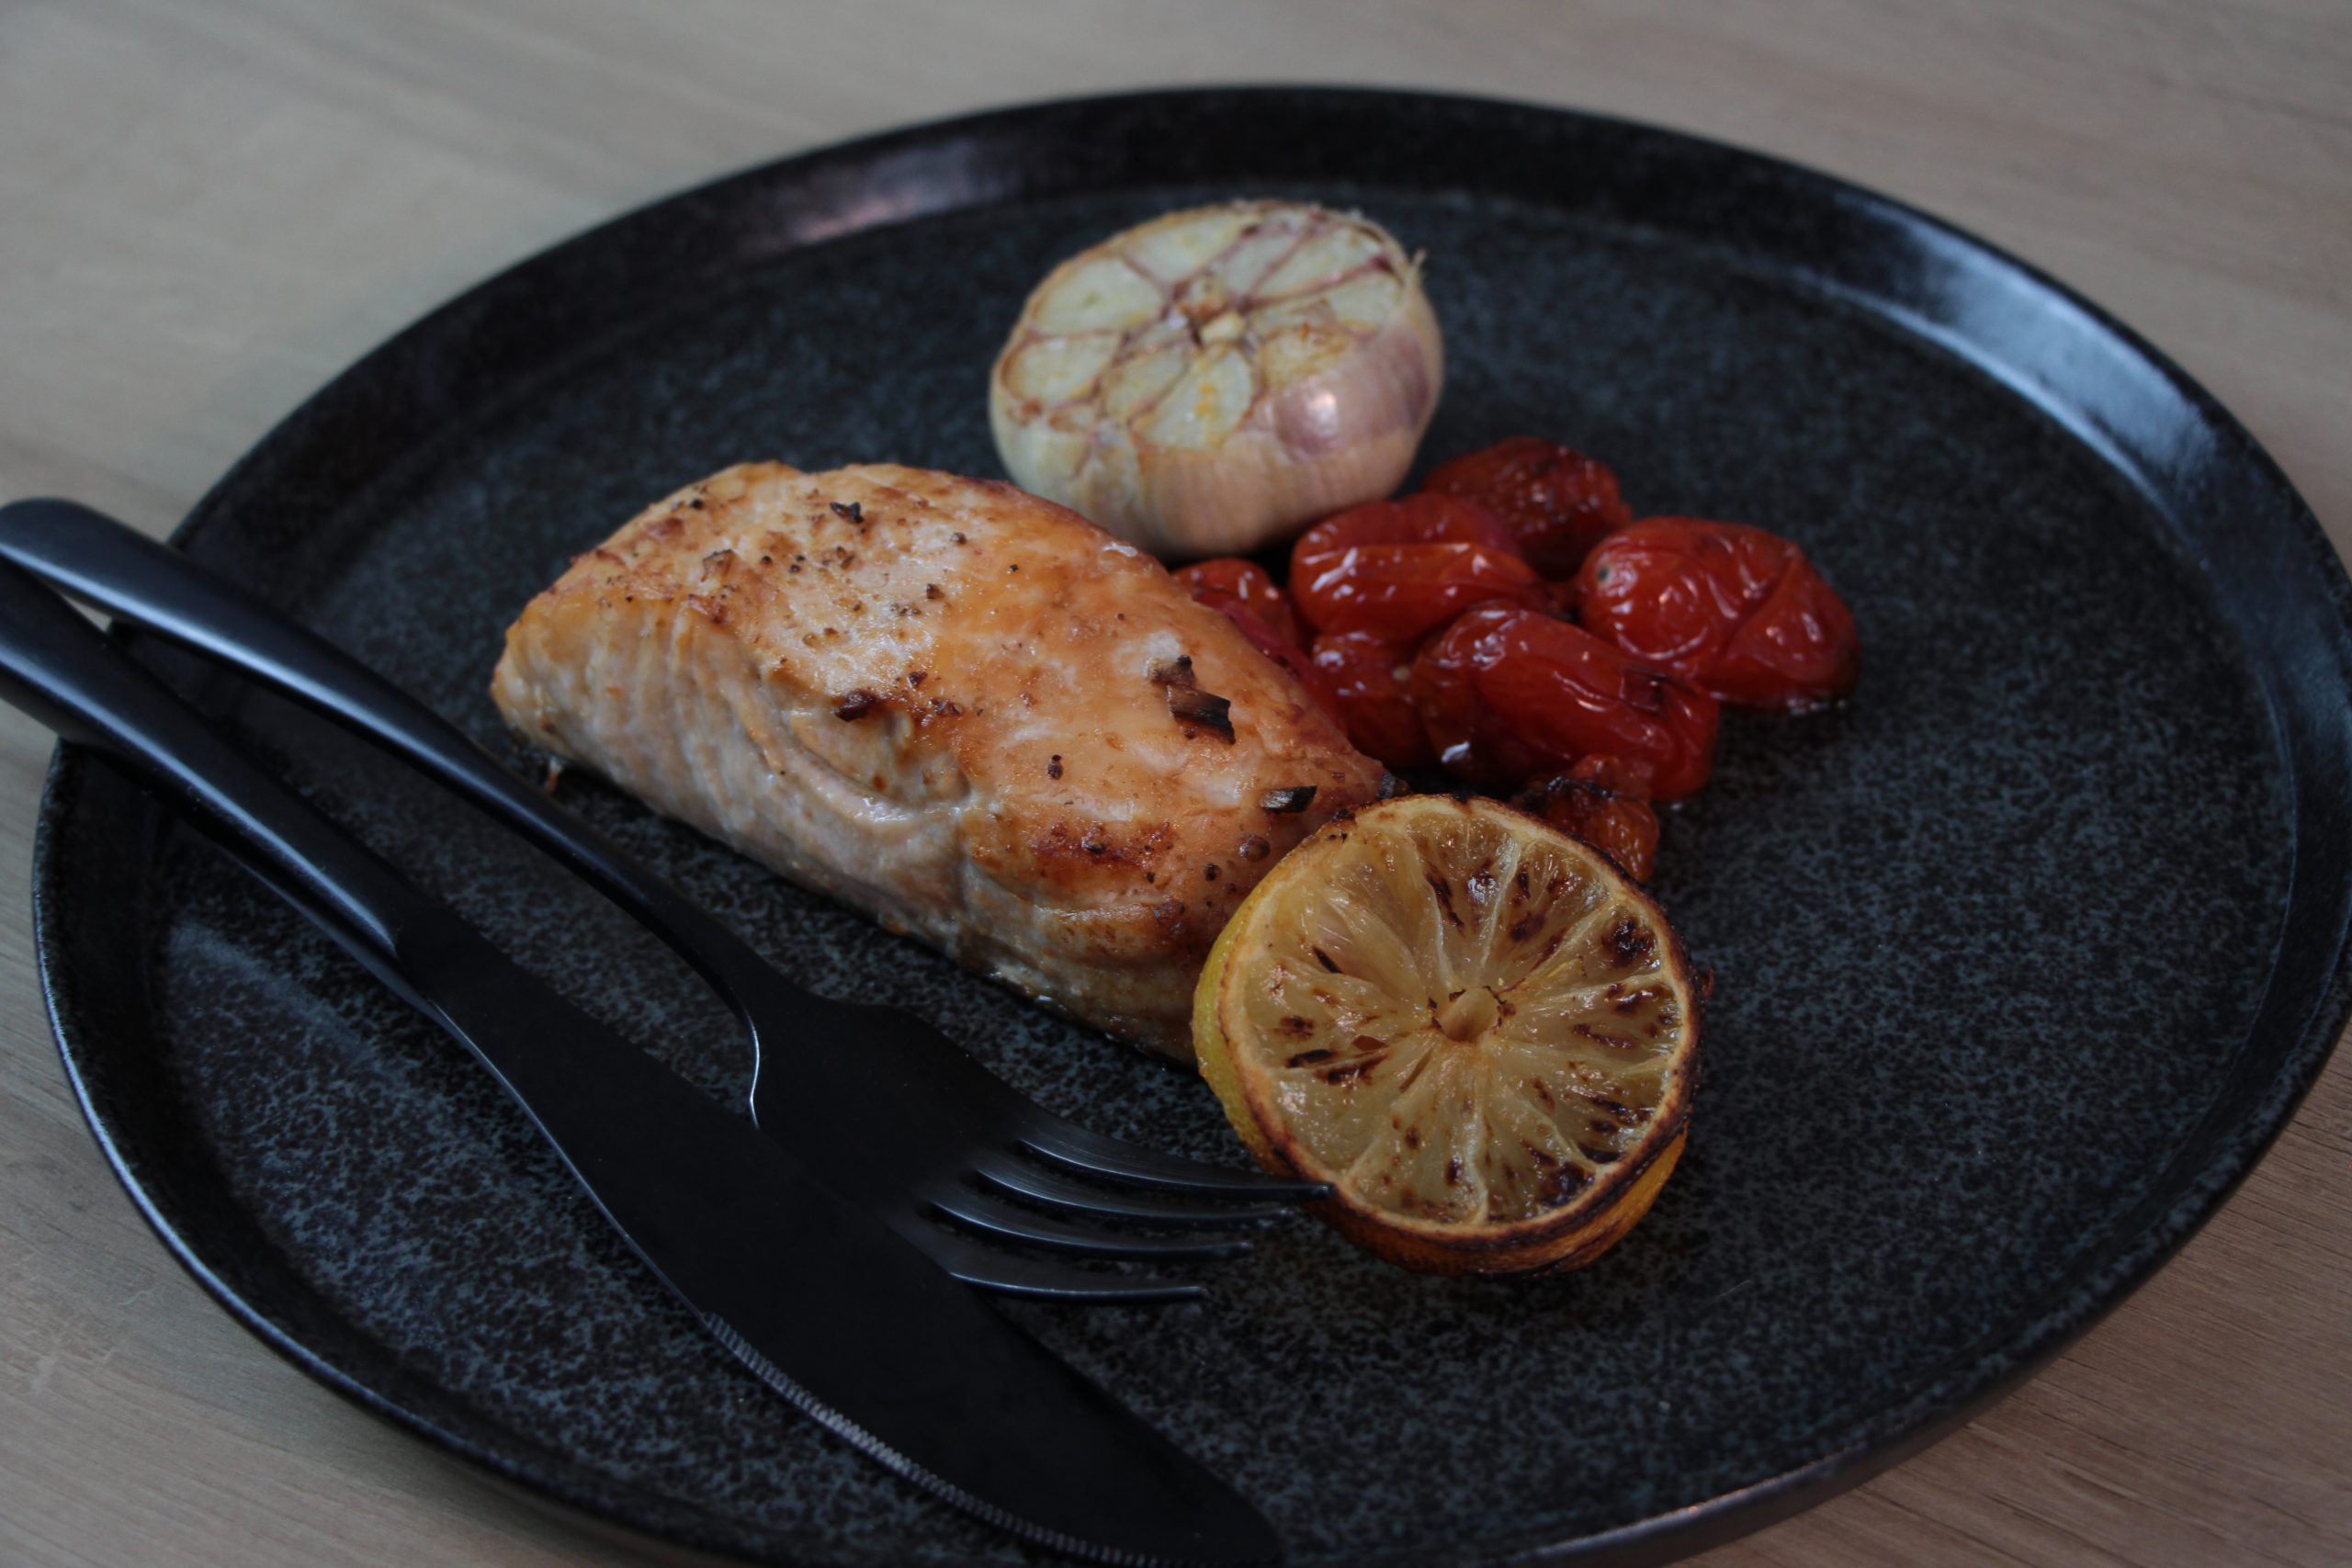 Receita de salmão grelhado feita na Air Fryer, exposta no prato com limão tomates cereja.